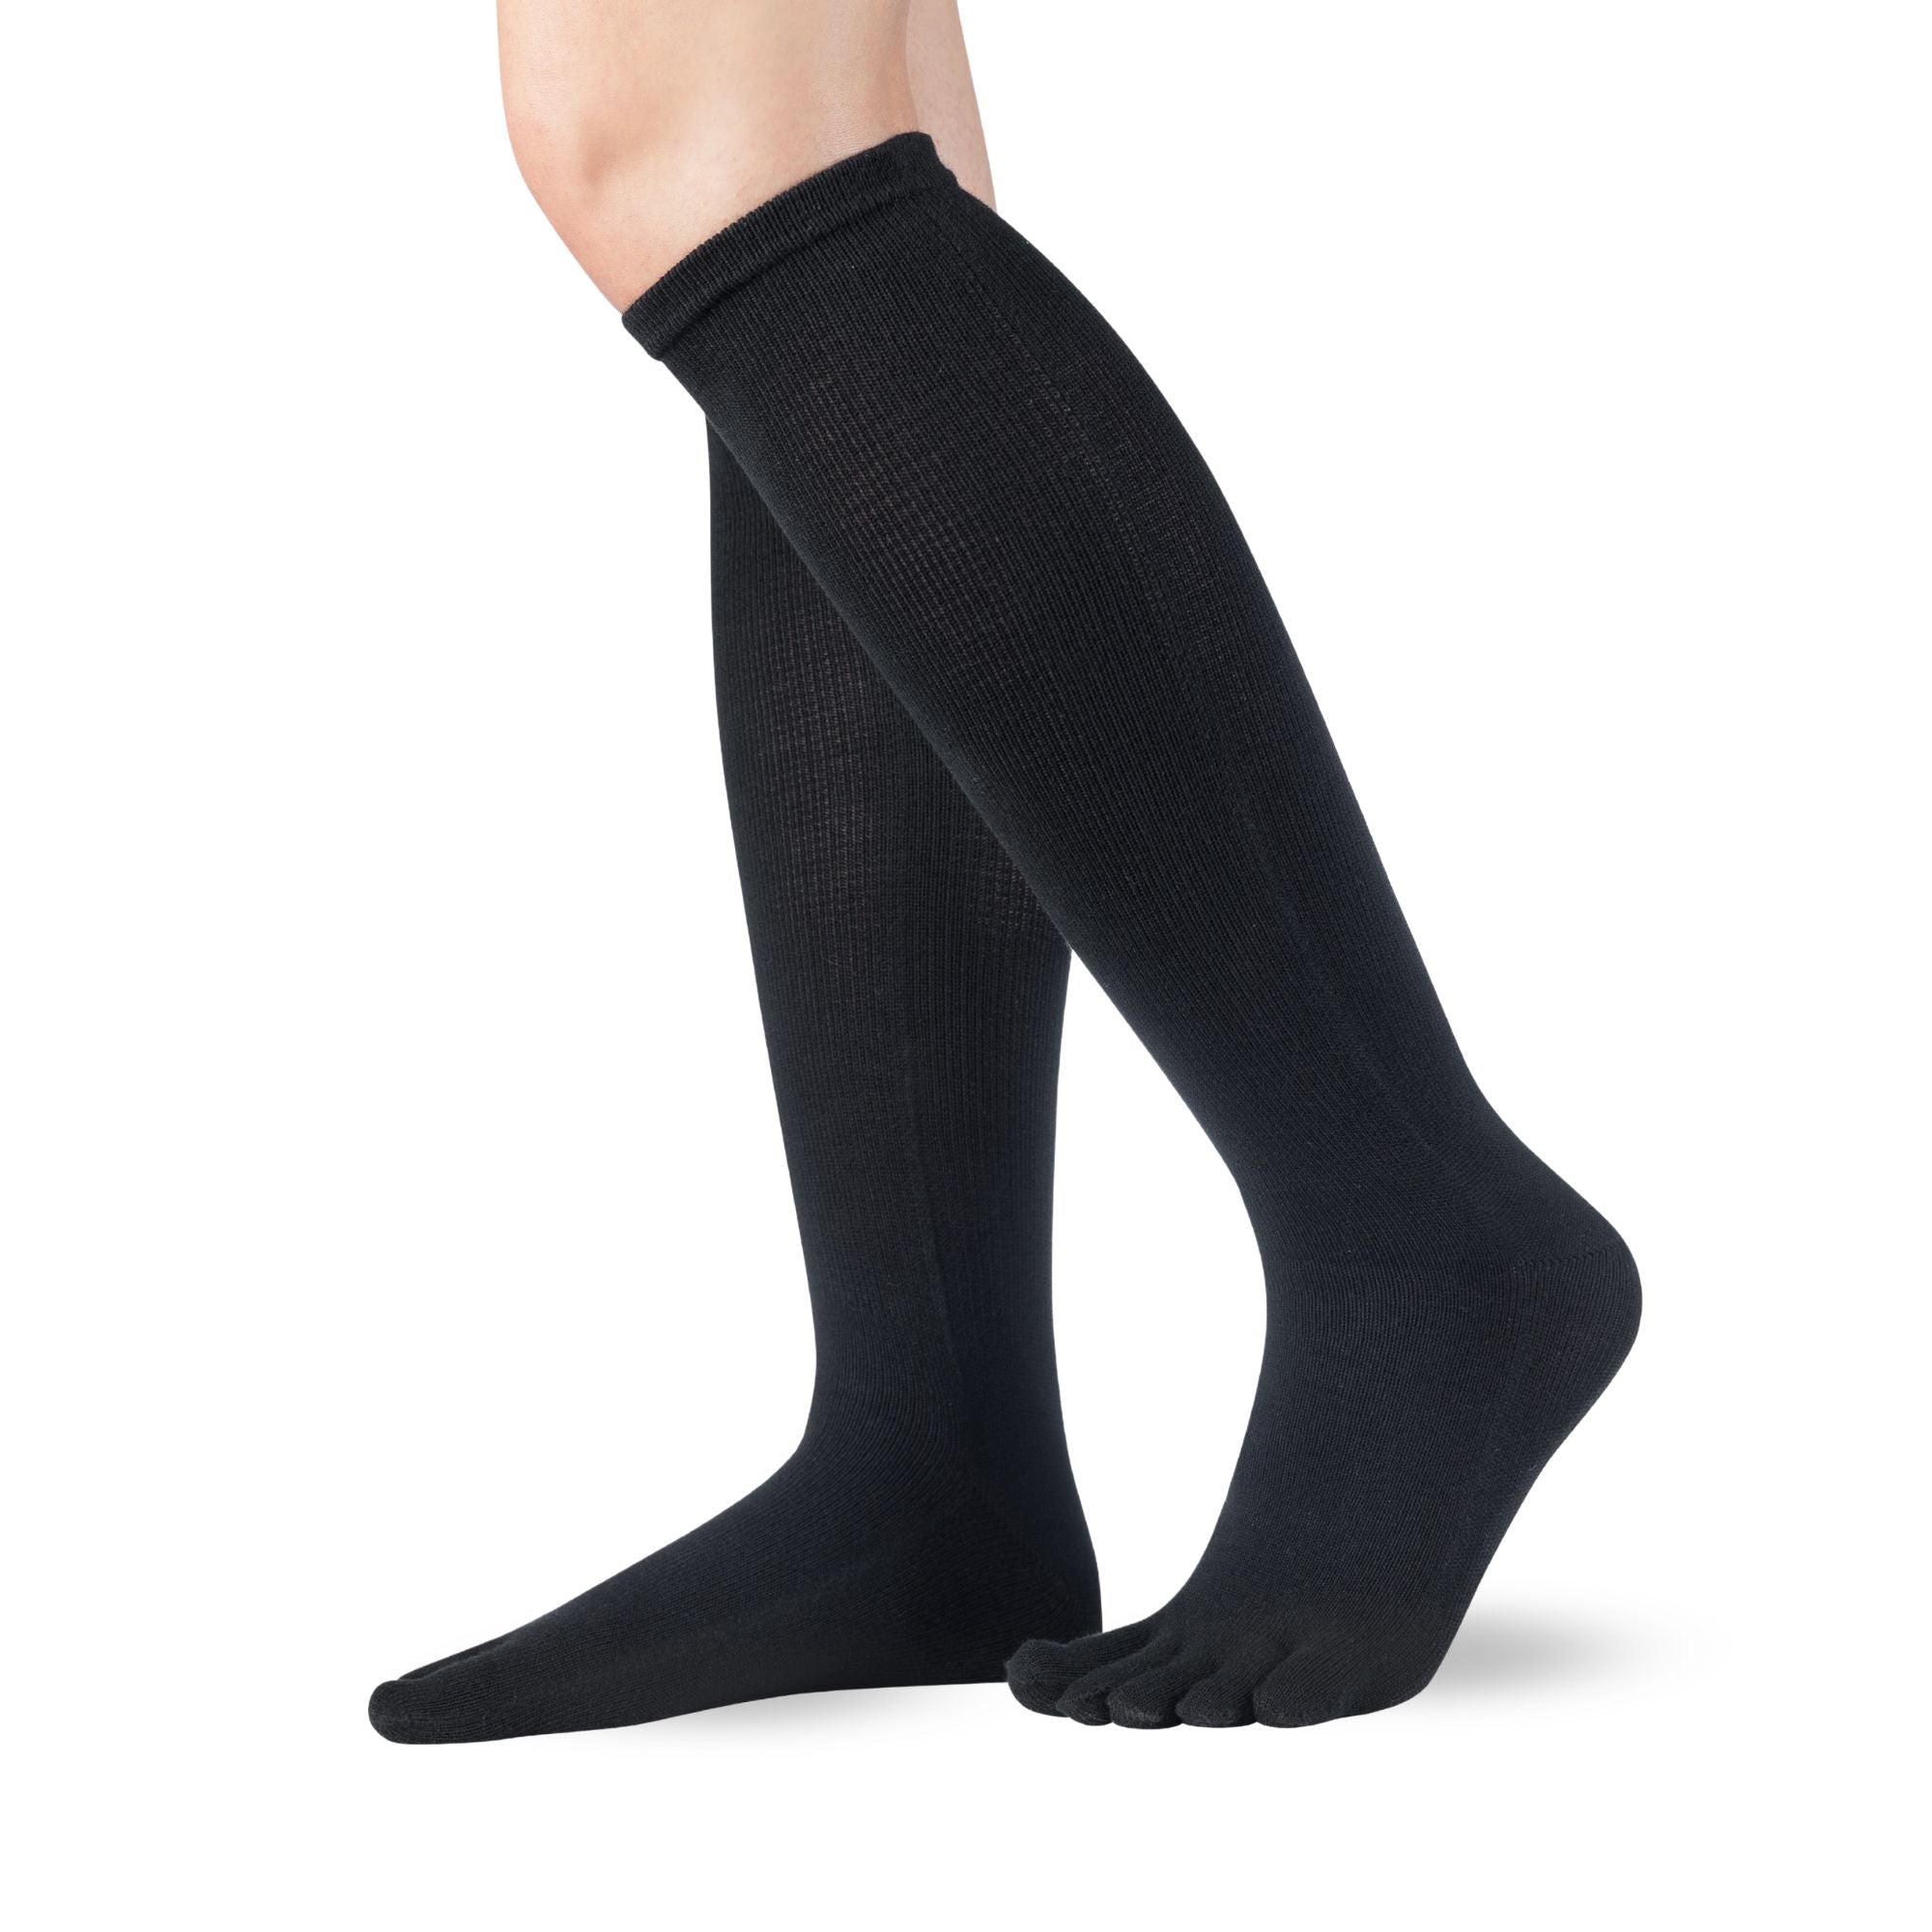 Knitido Calze a punta Essentials (cotone) lunghe fino al ginocchio dal lato in nero